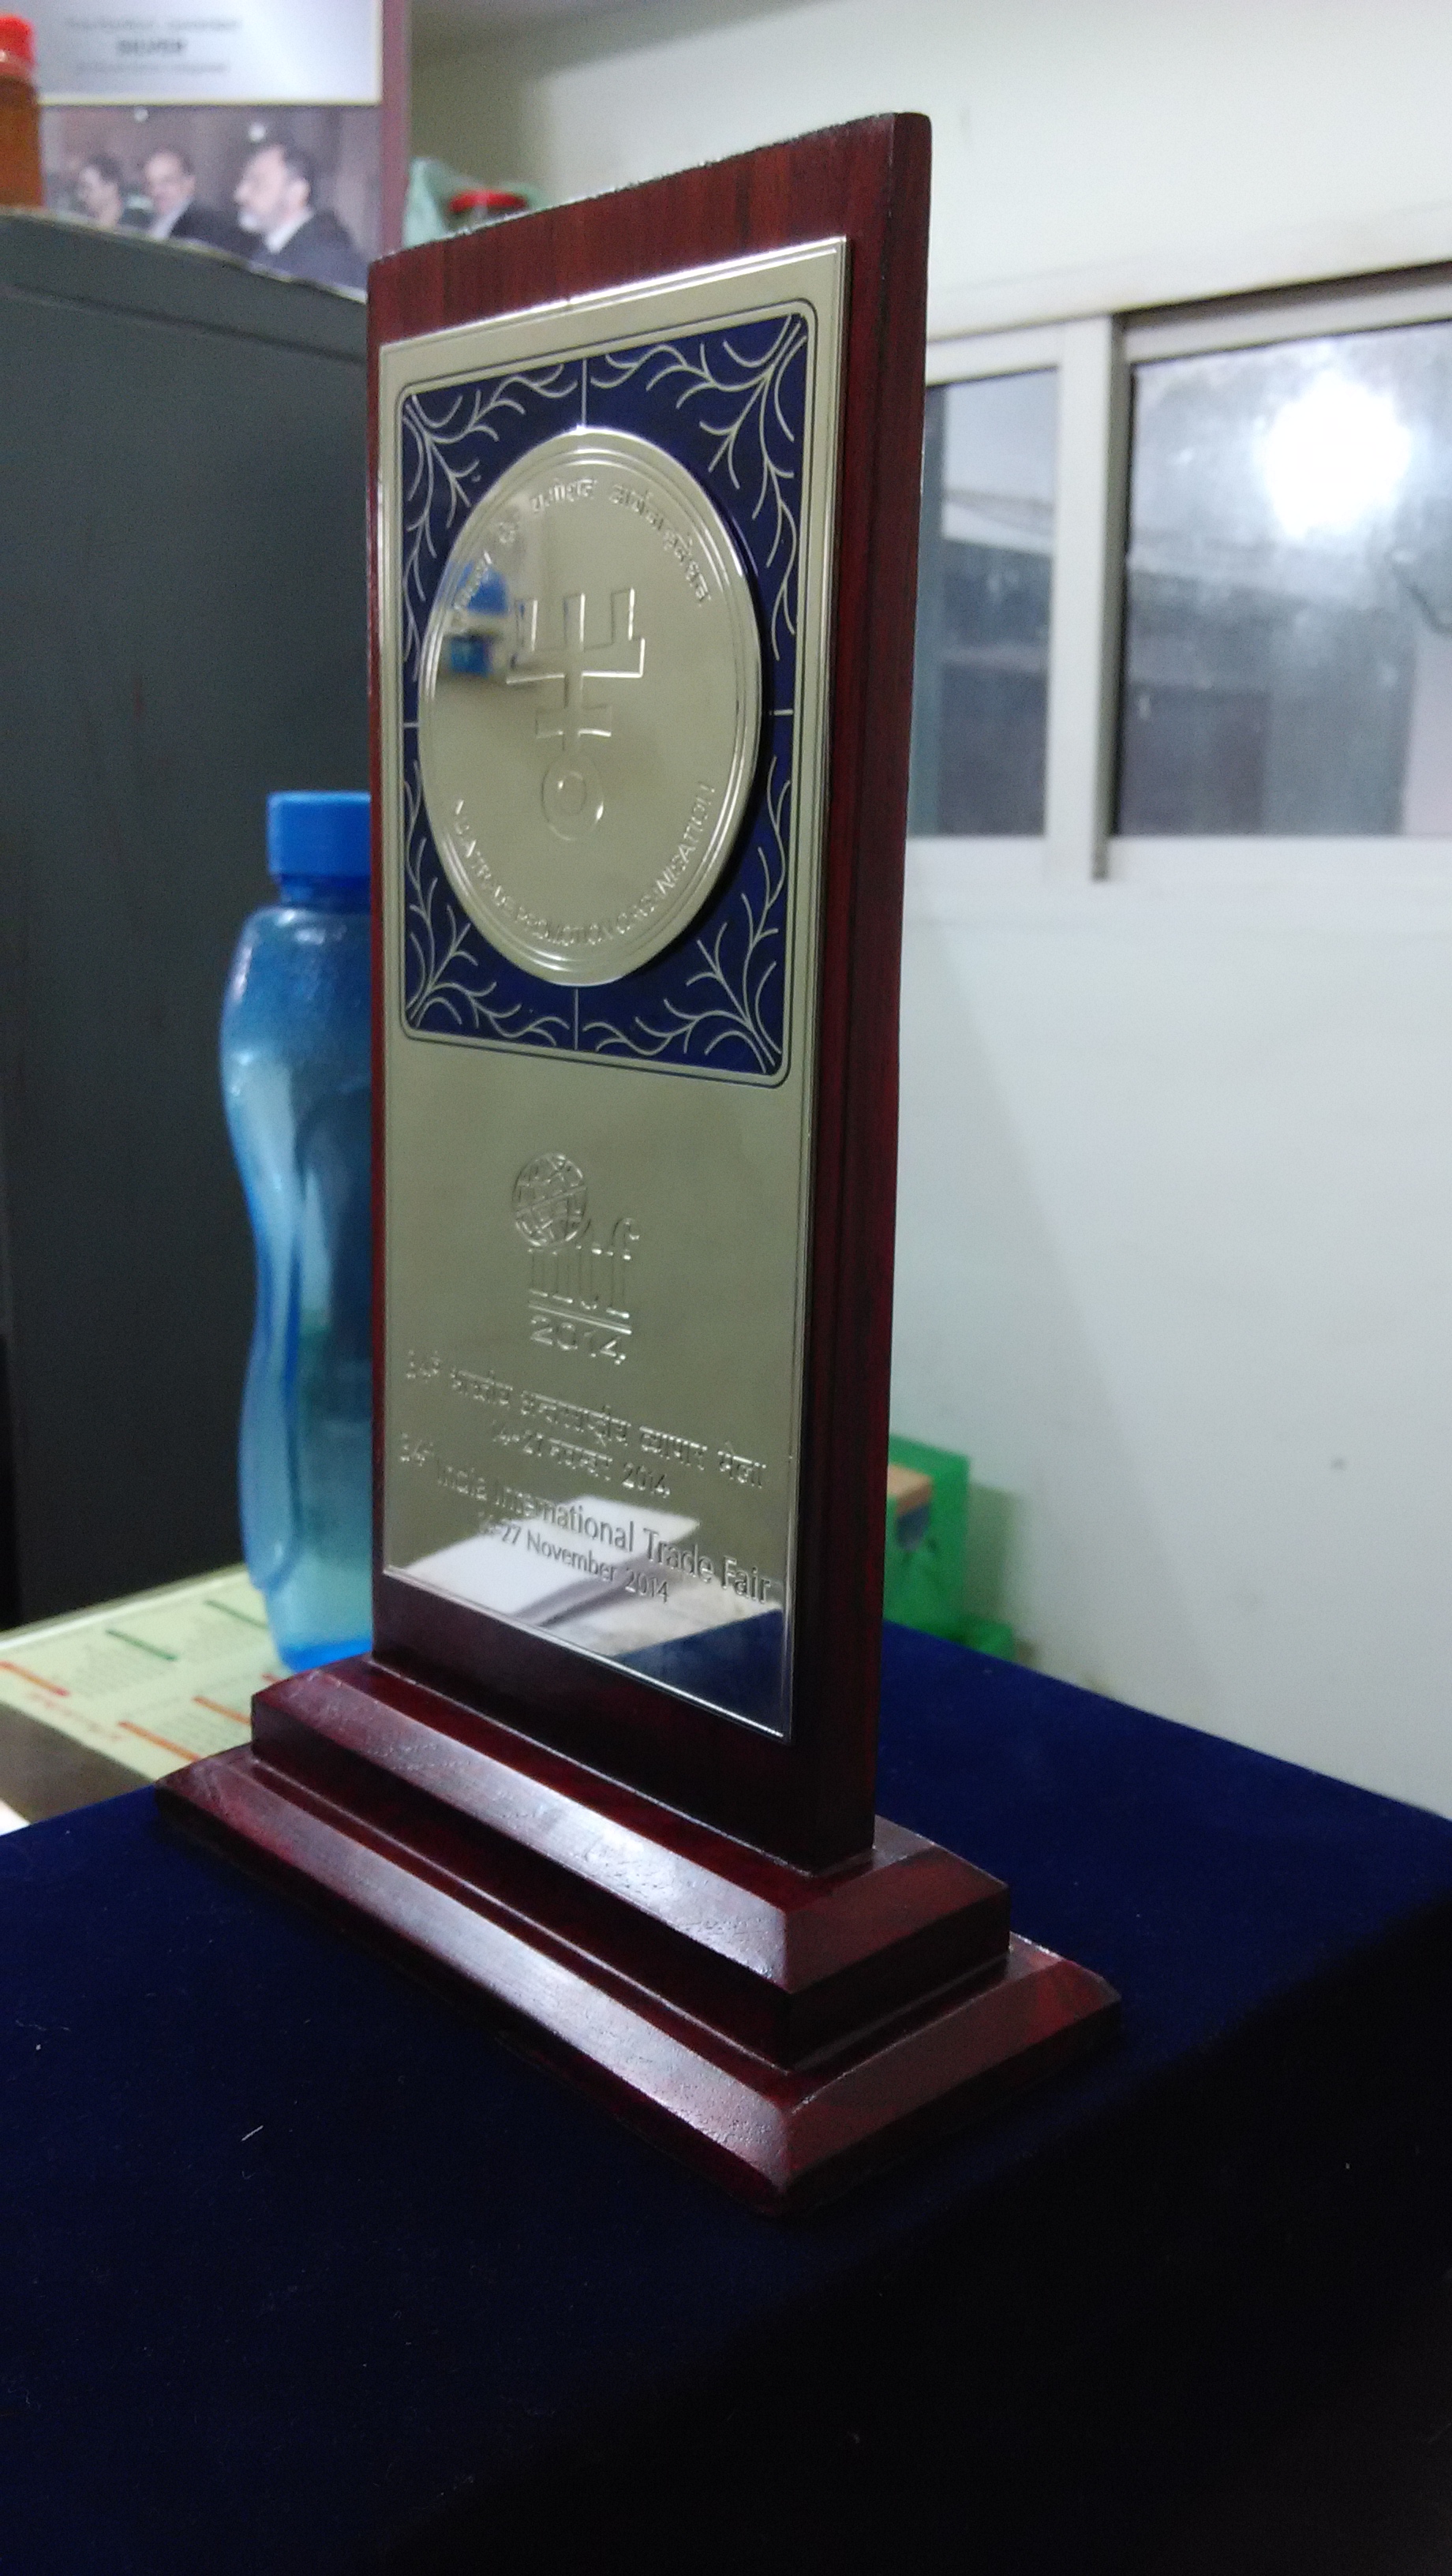 India International Trade Fair Best Stall Runnerup Award 2014